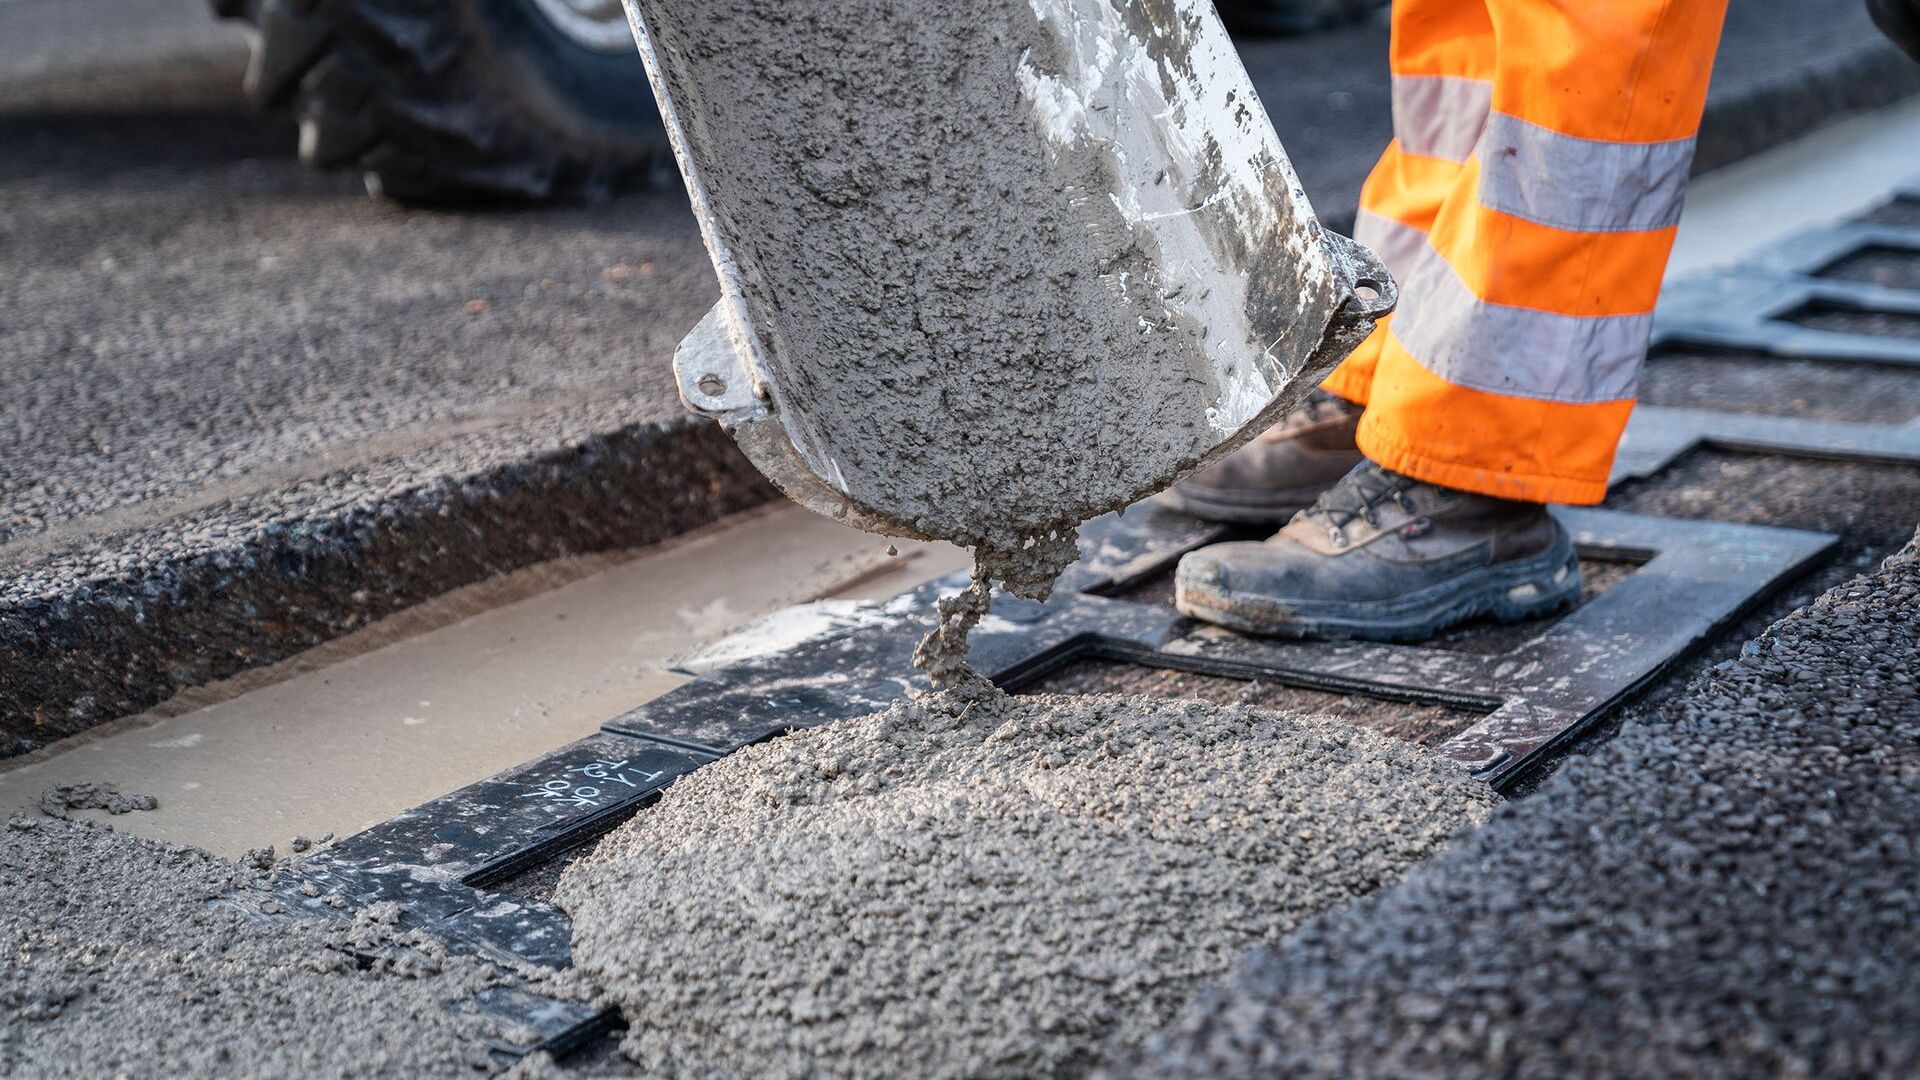 Постављање бетона „Арене будућности“ у Кјарију, у ломбардској провинцији Бреша: то је иновативно кружно коло, у близини аутопута БРЕБЕМИ А35, на којем се тестира индукционо пуњење електричних возила, која путују наменским тракама испод којих су постављени калемови.